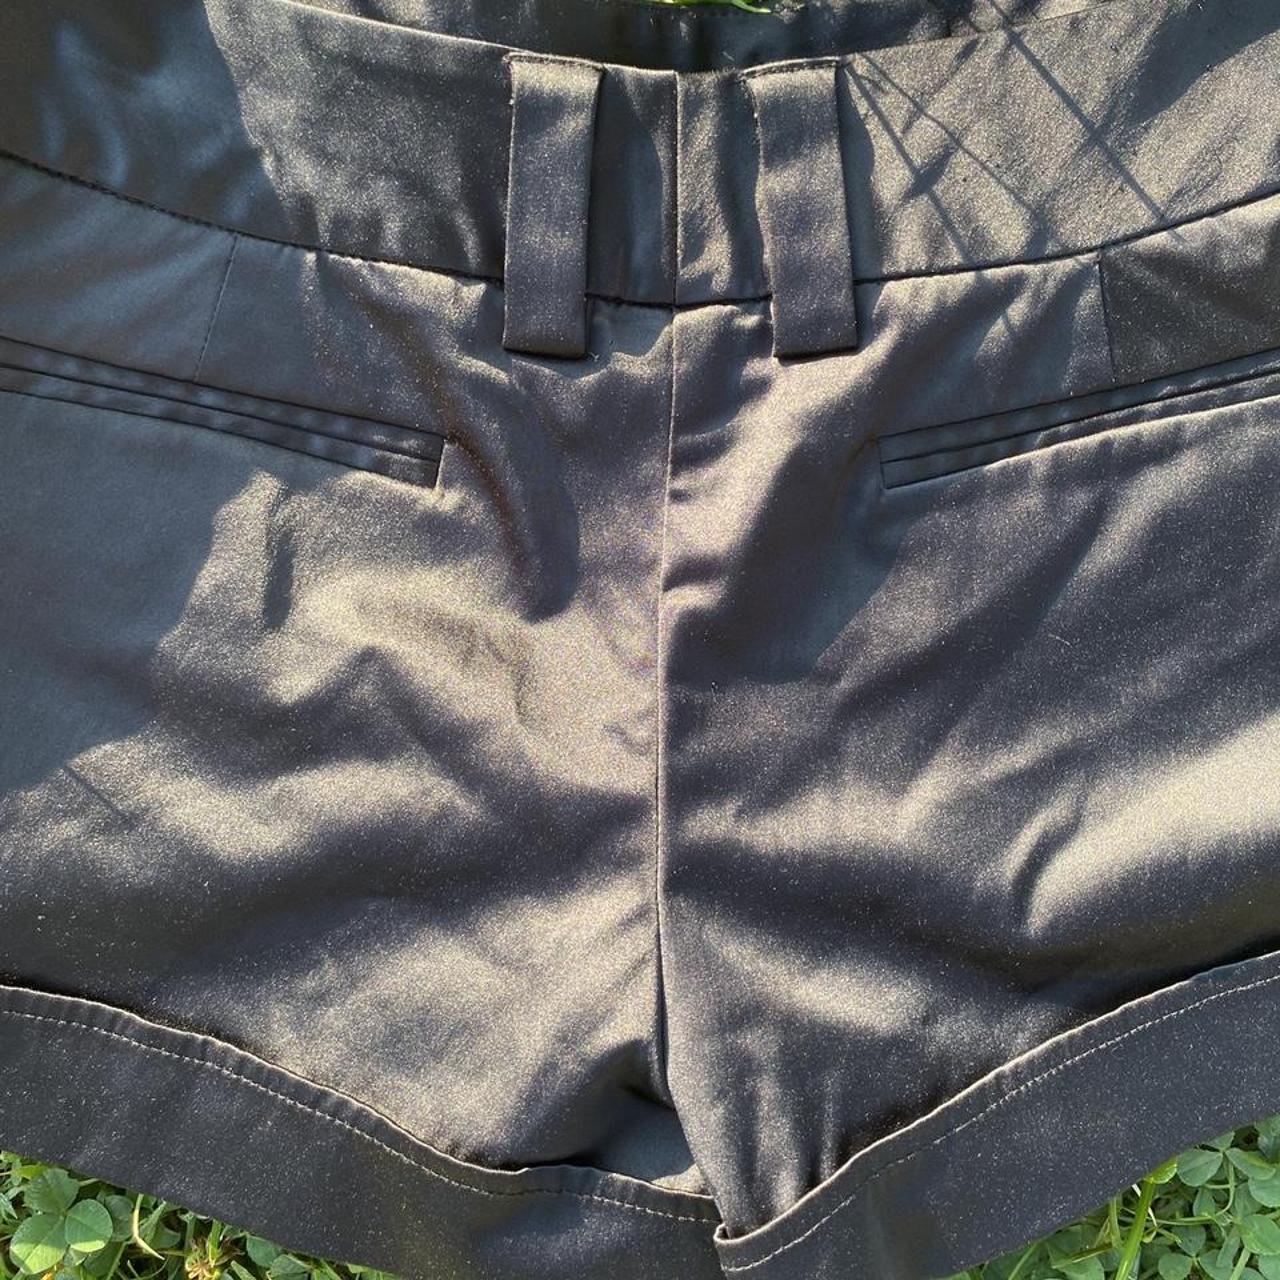 Product Image 4 - Vintage black satin shorts

Brand: IZ